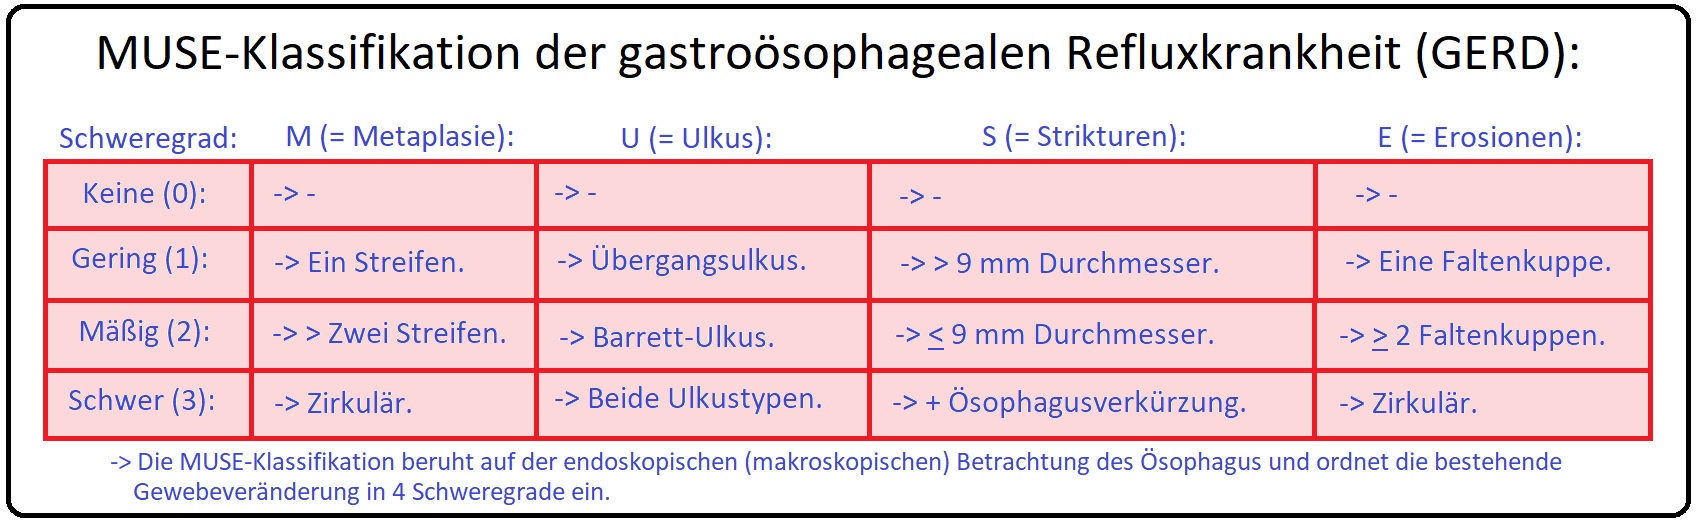 1285 MUSE Klassifikation der gastroösophagealen Refluxkrankheits